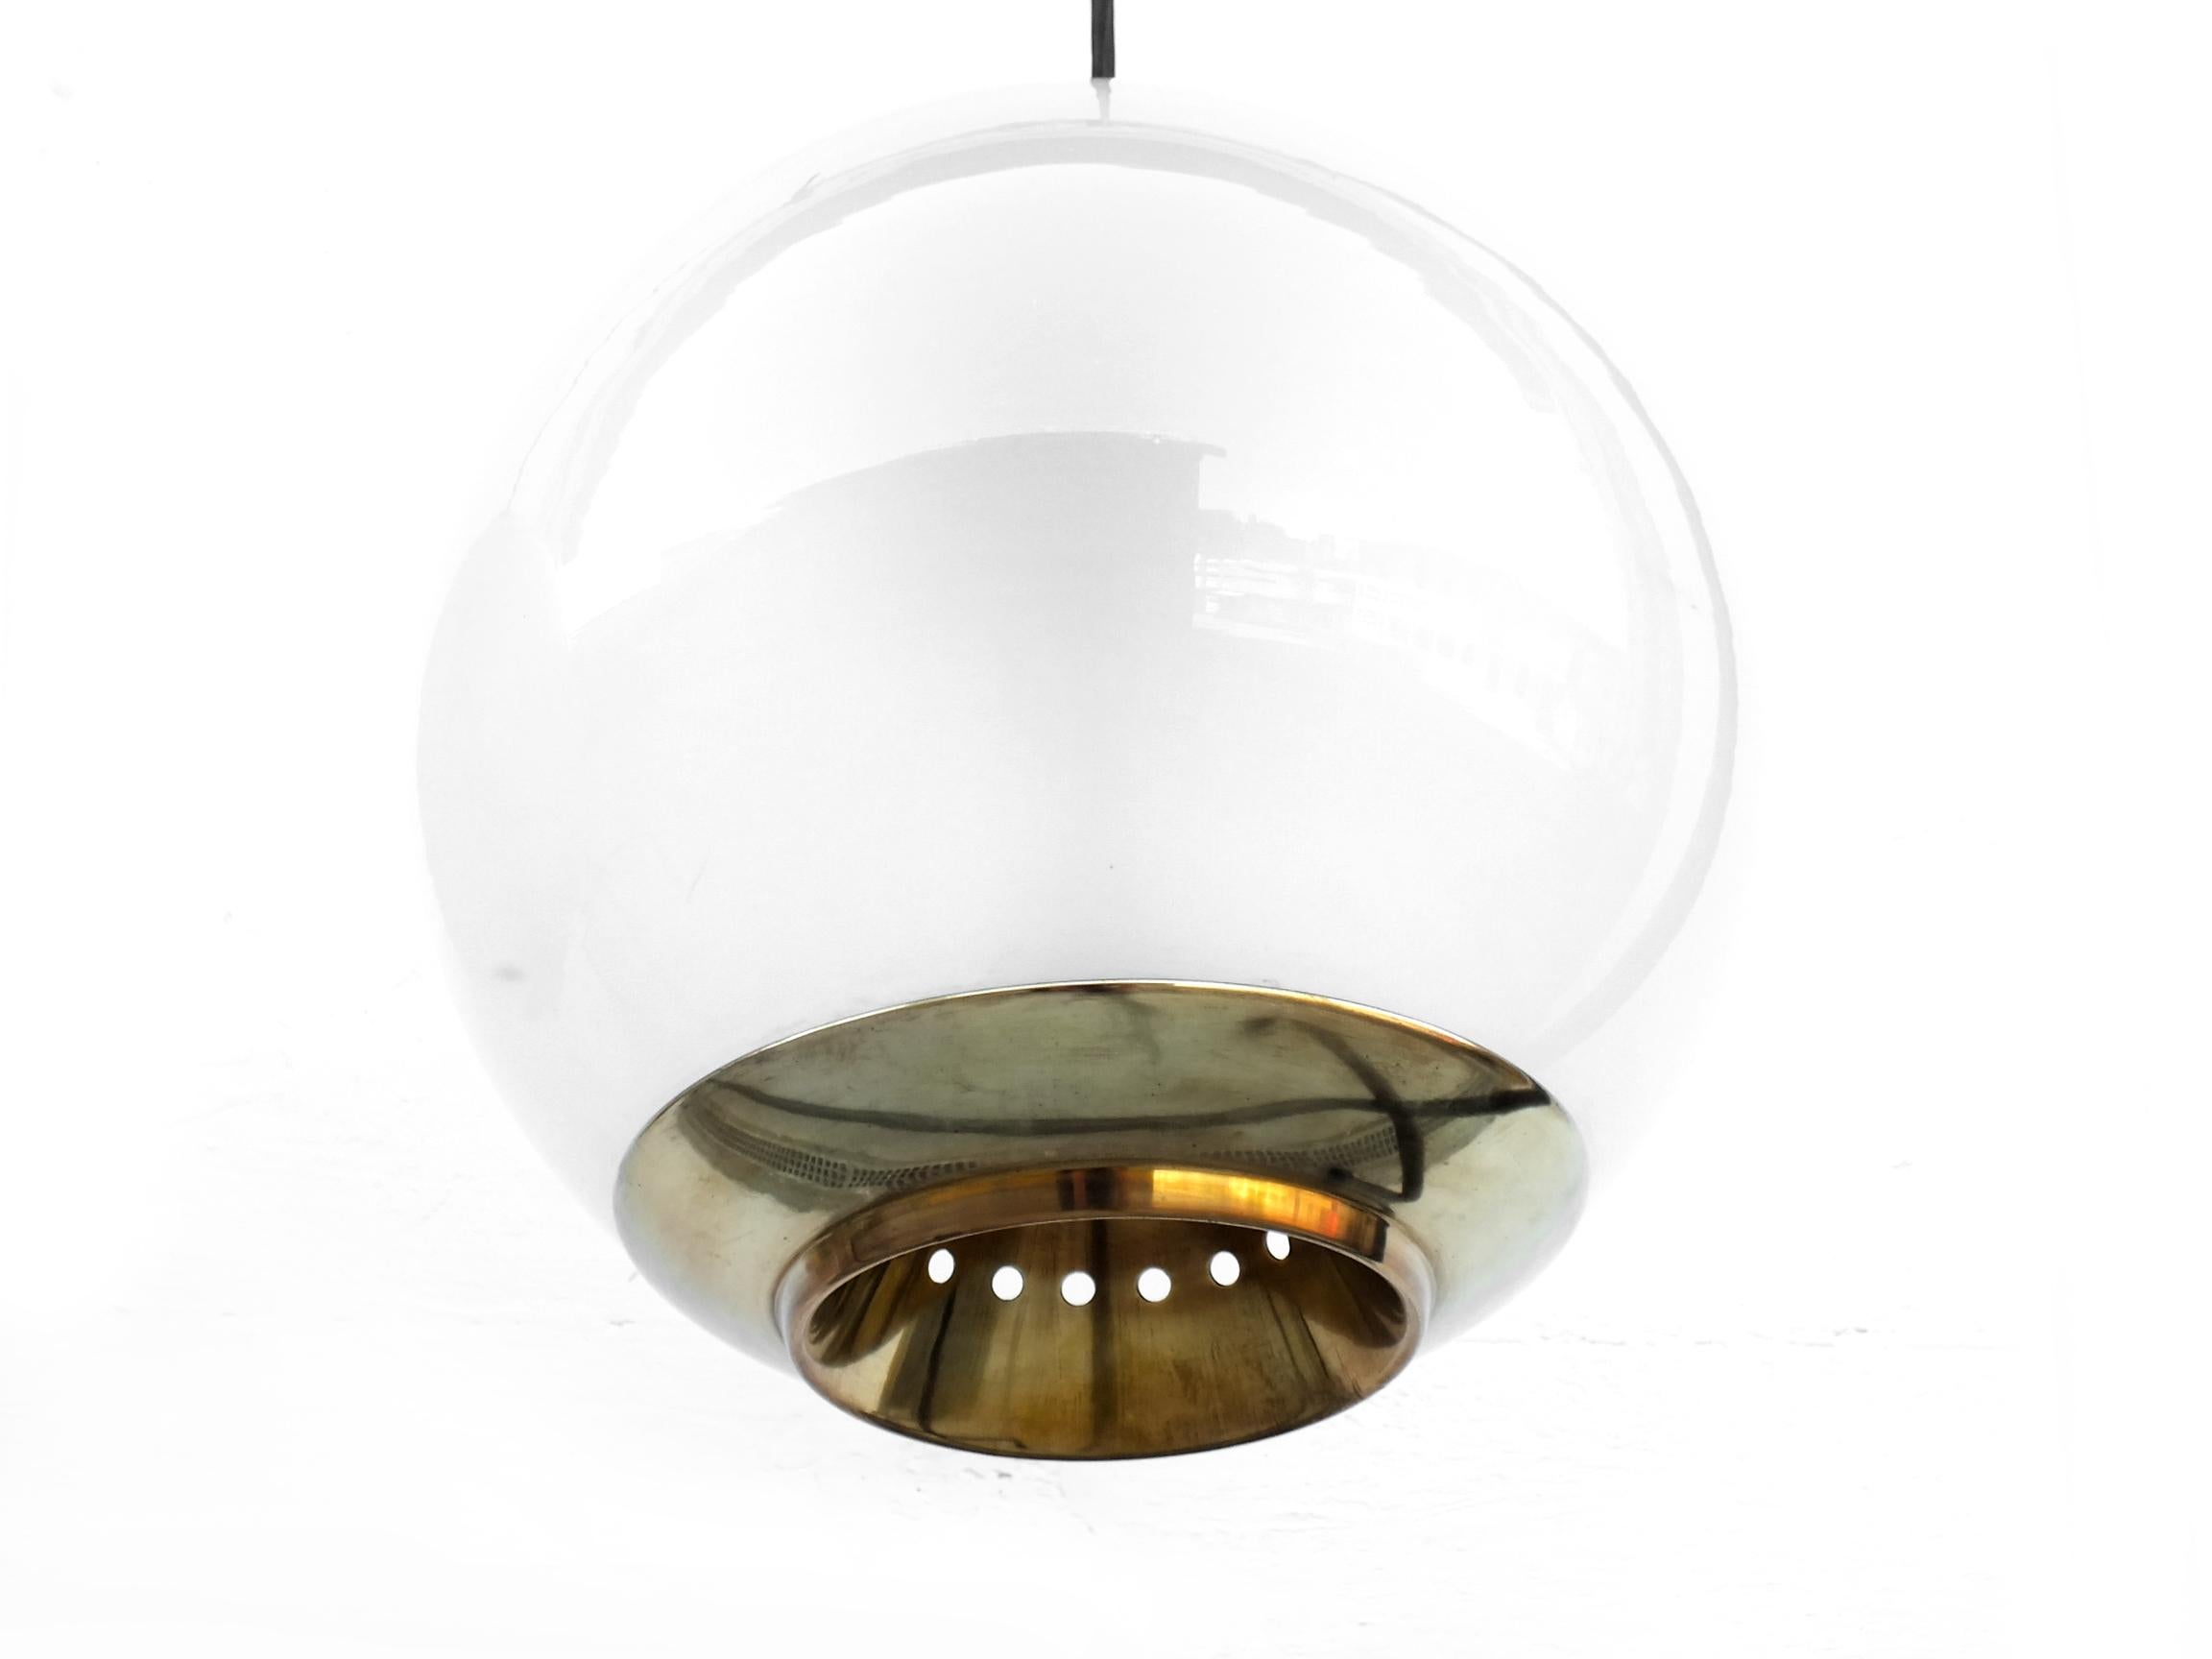 Mid-20th Century Vintage Big Ball ceilin Lamps Ls2 Luigi Caccia Dominioni Design by Azucena, 1954 For Sale